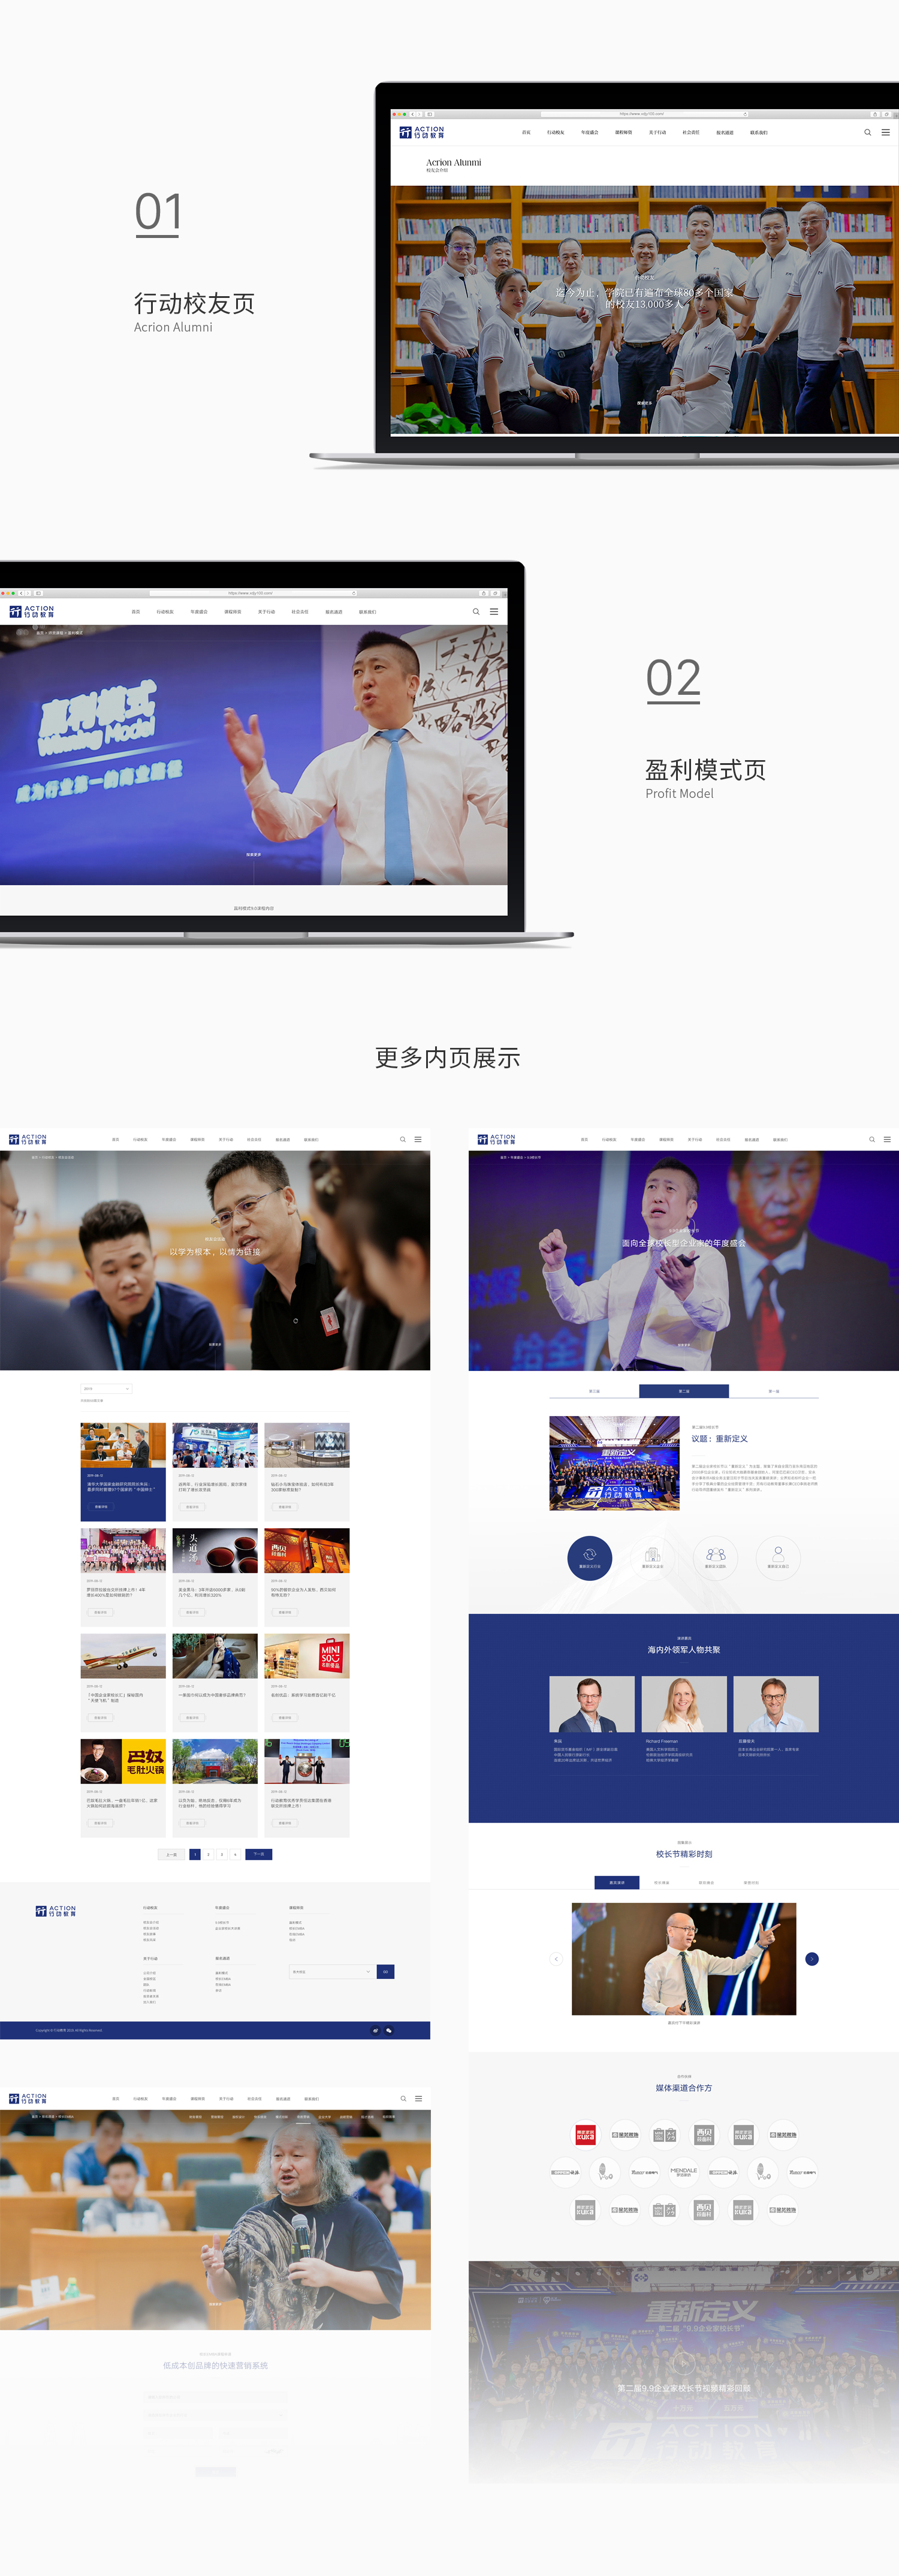 行动教育品牌网站建设-新媒体营销,新媒体广告公司,上海网络营销,微信代运营,高端网站建设,网站建设公司